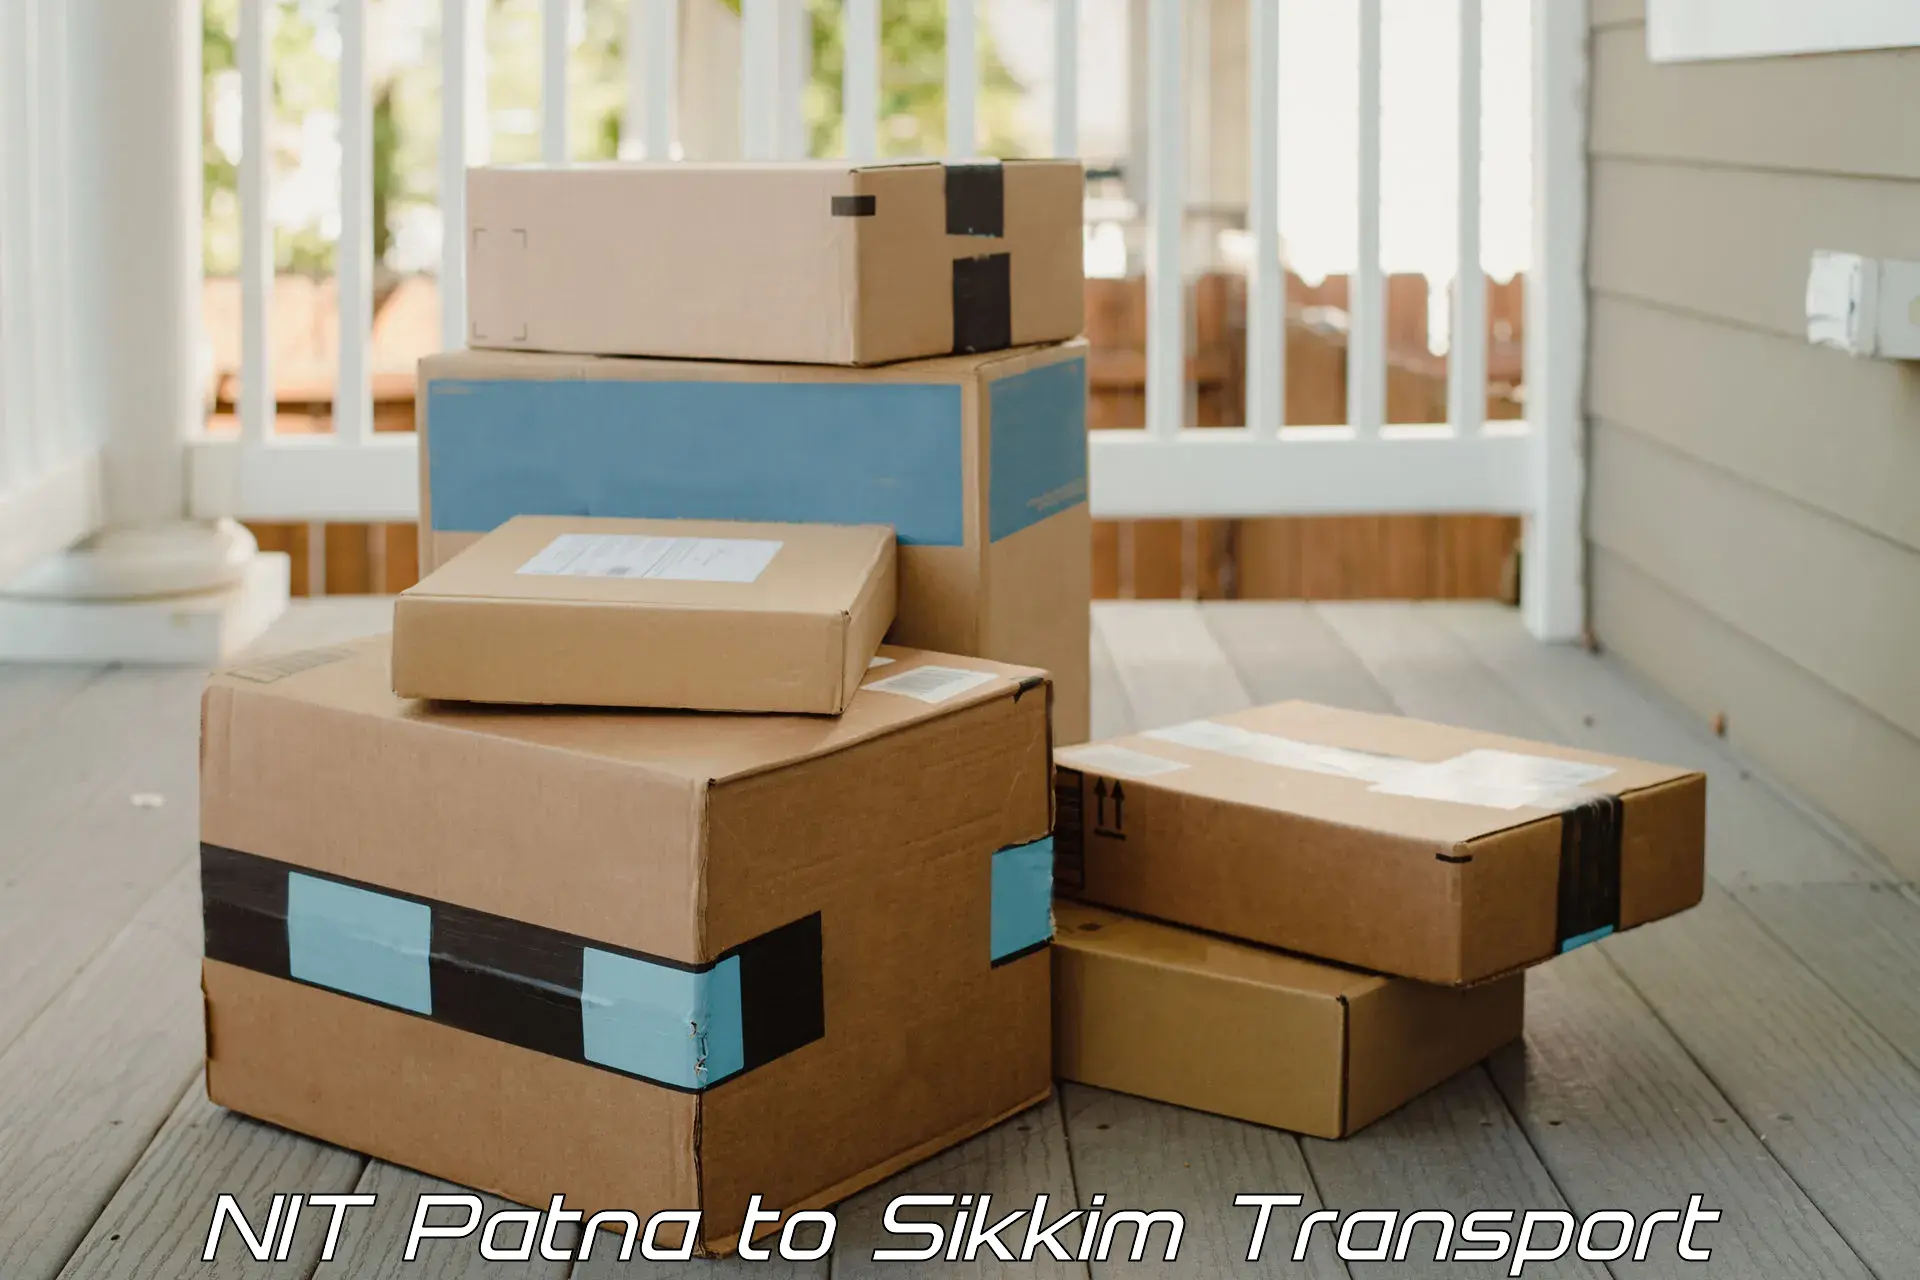 Daily parcel service transport NIT Patna to Sikkim